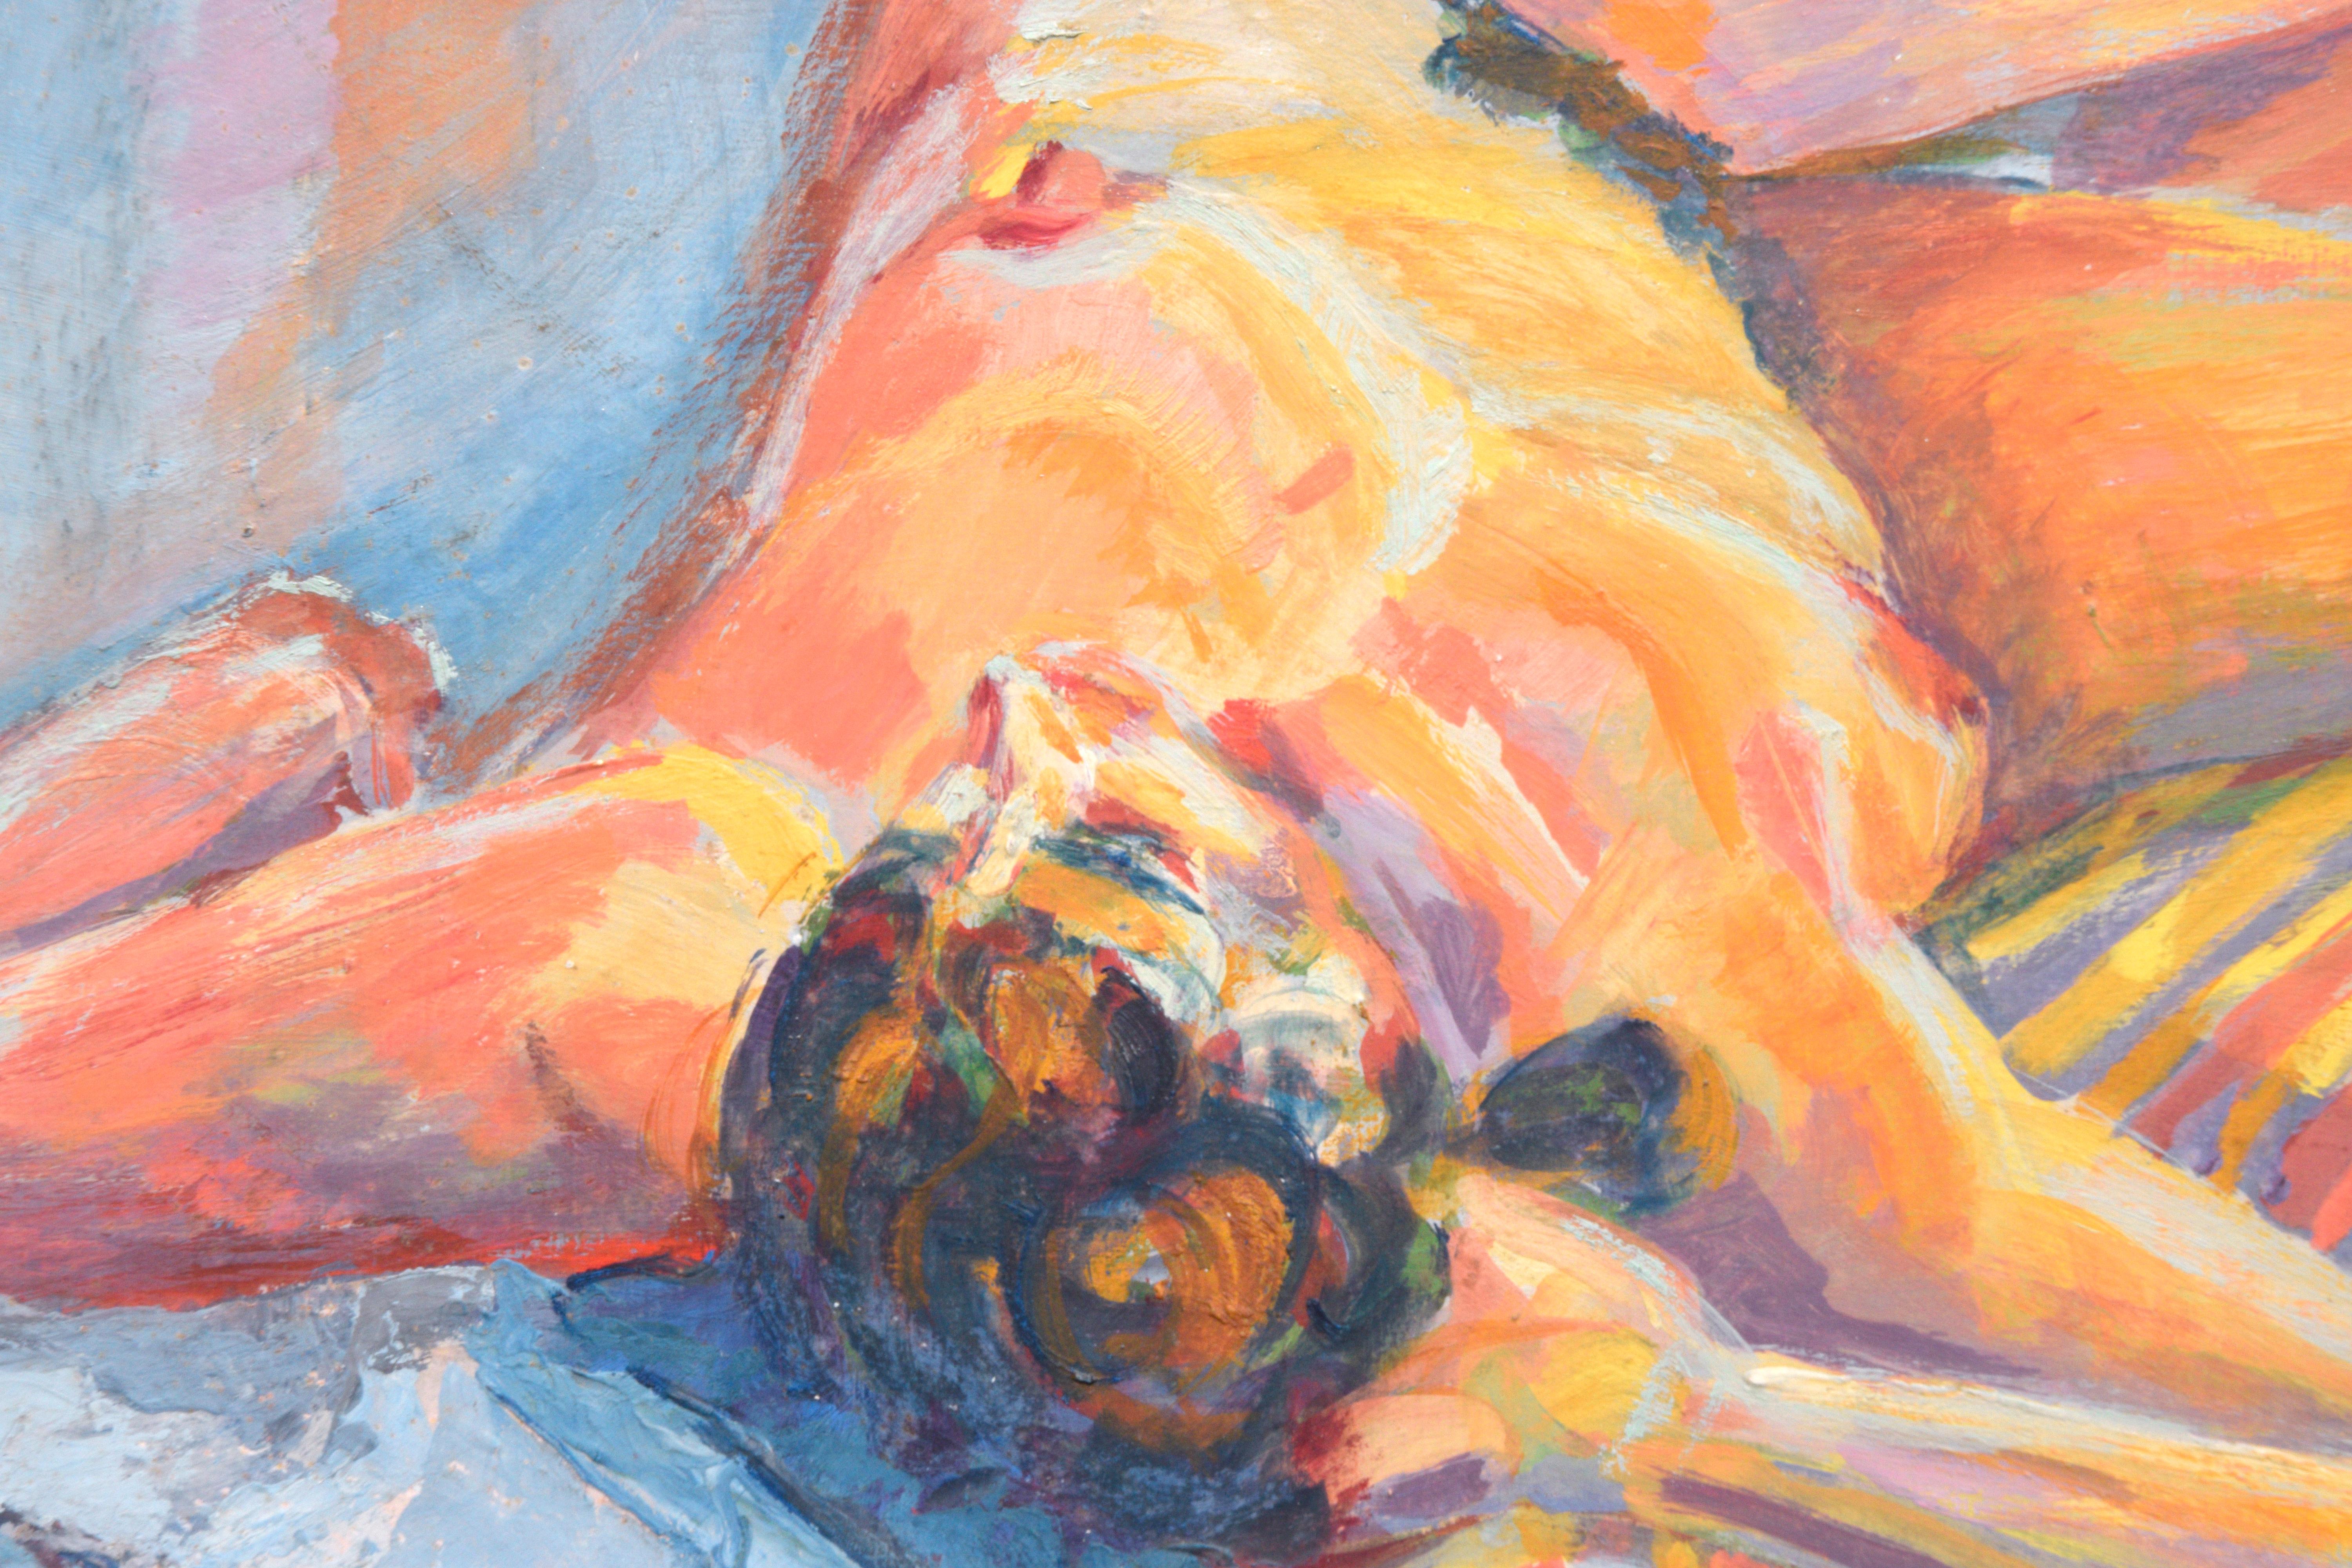 Peinture figurative moderniste d'un artiste inconnu (américain, 20e siècle). Cette pièce figurative de la fin du XXe siècle présente une femme nue allongée aux couleurs vives et à la palette de couleurs expressives. 

Signé indistinctement en bas à